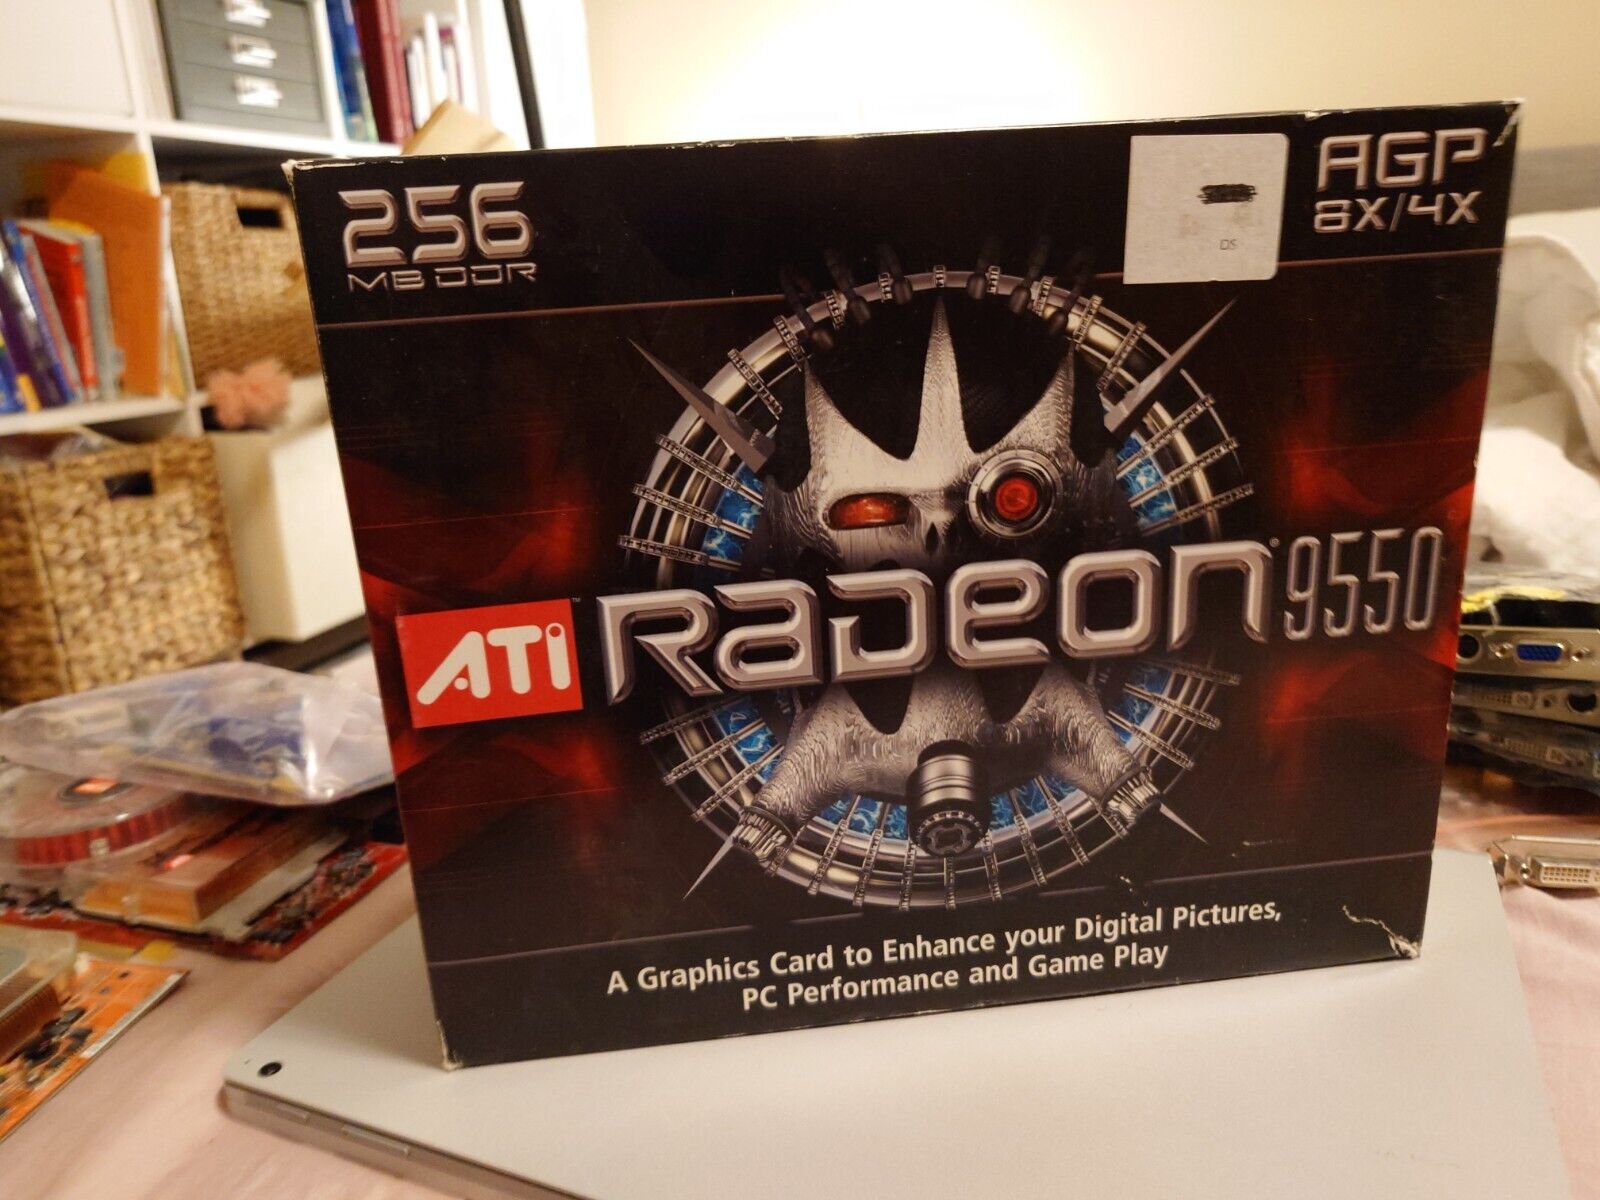 ATI Radeon 9550 (GVR955128D) 128MB AGP 4x/8x Graphics adapter